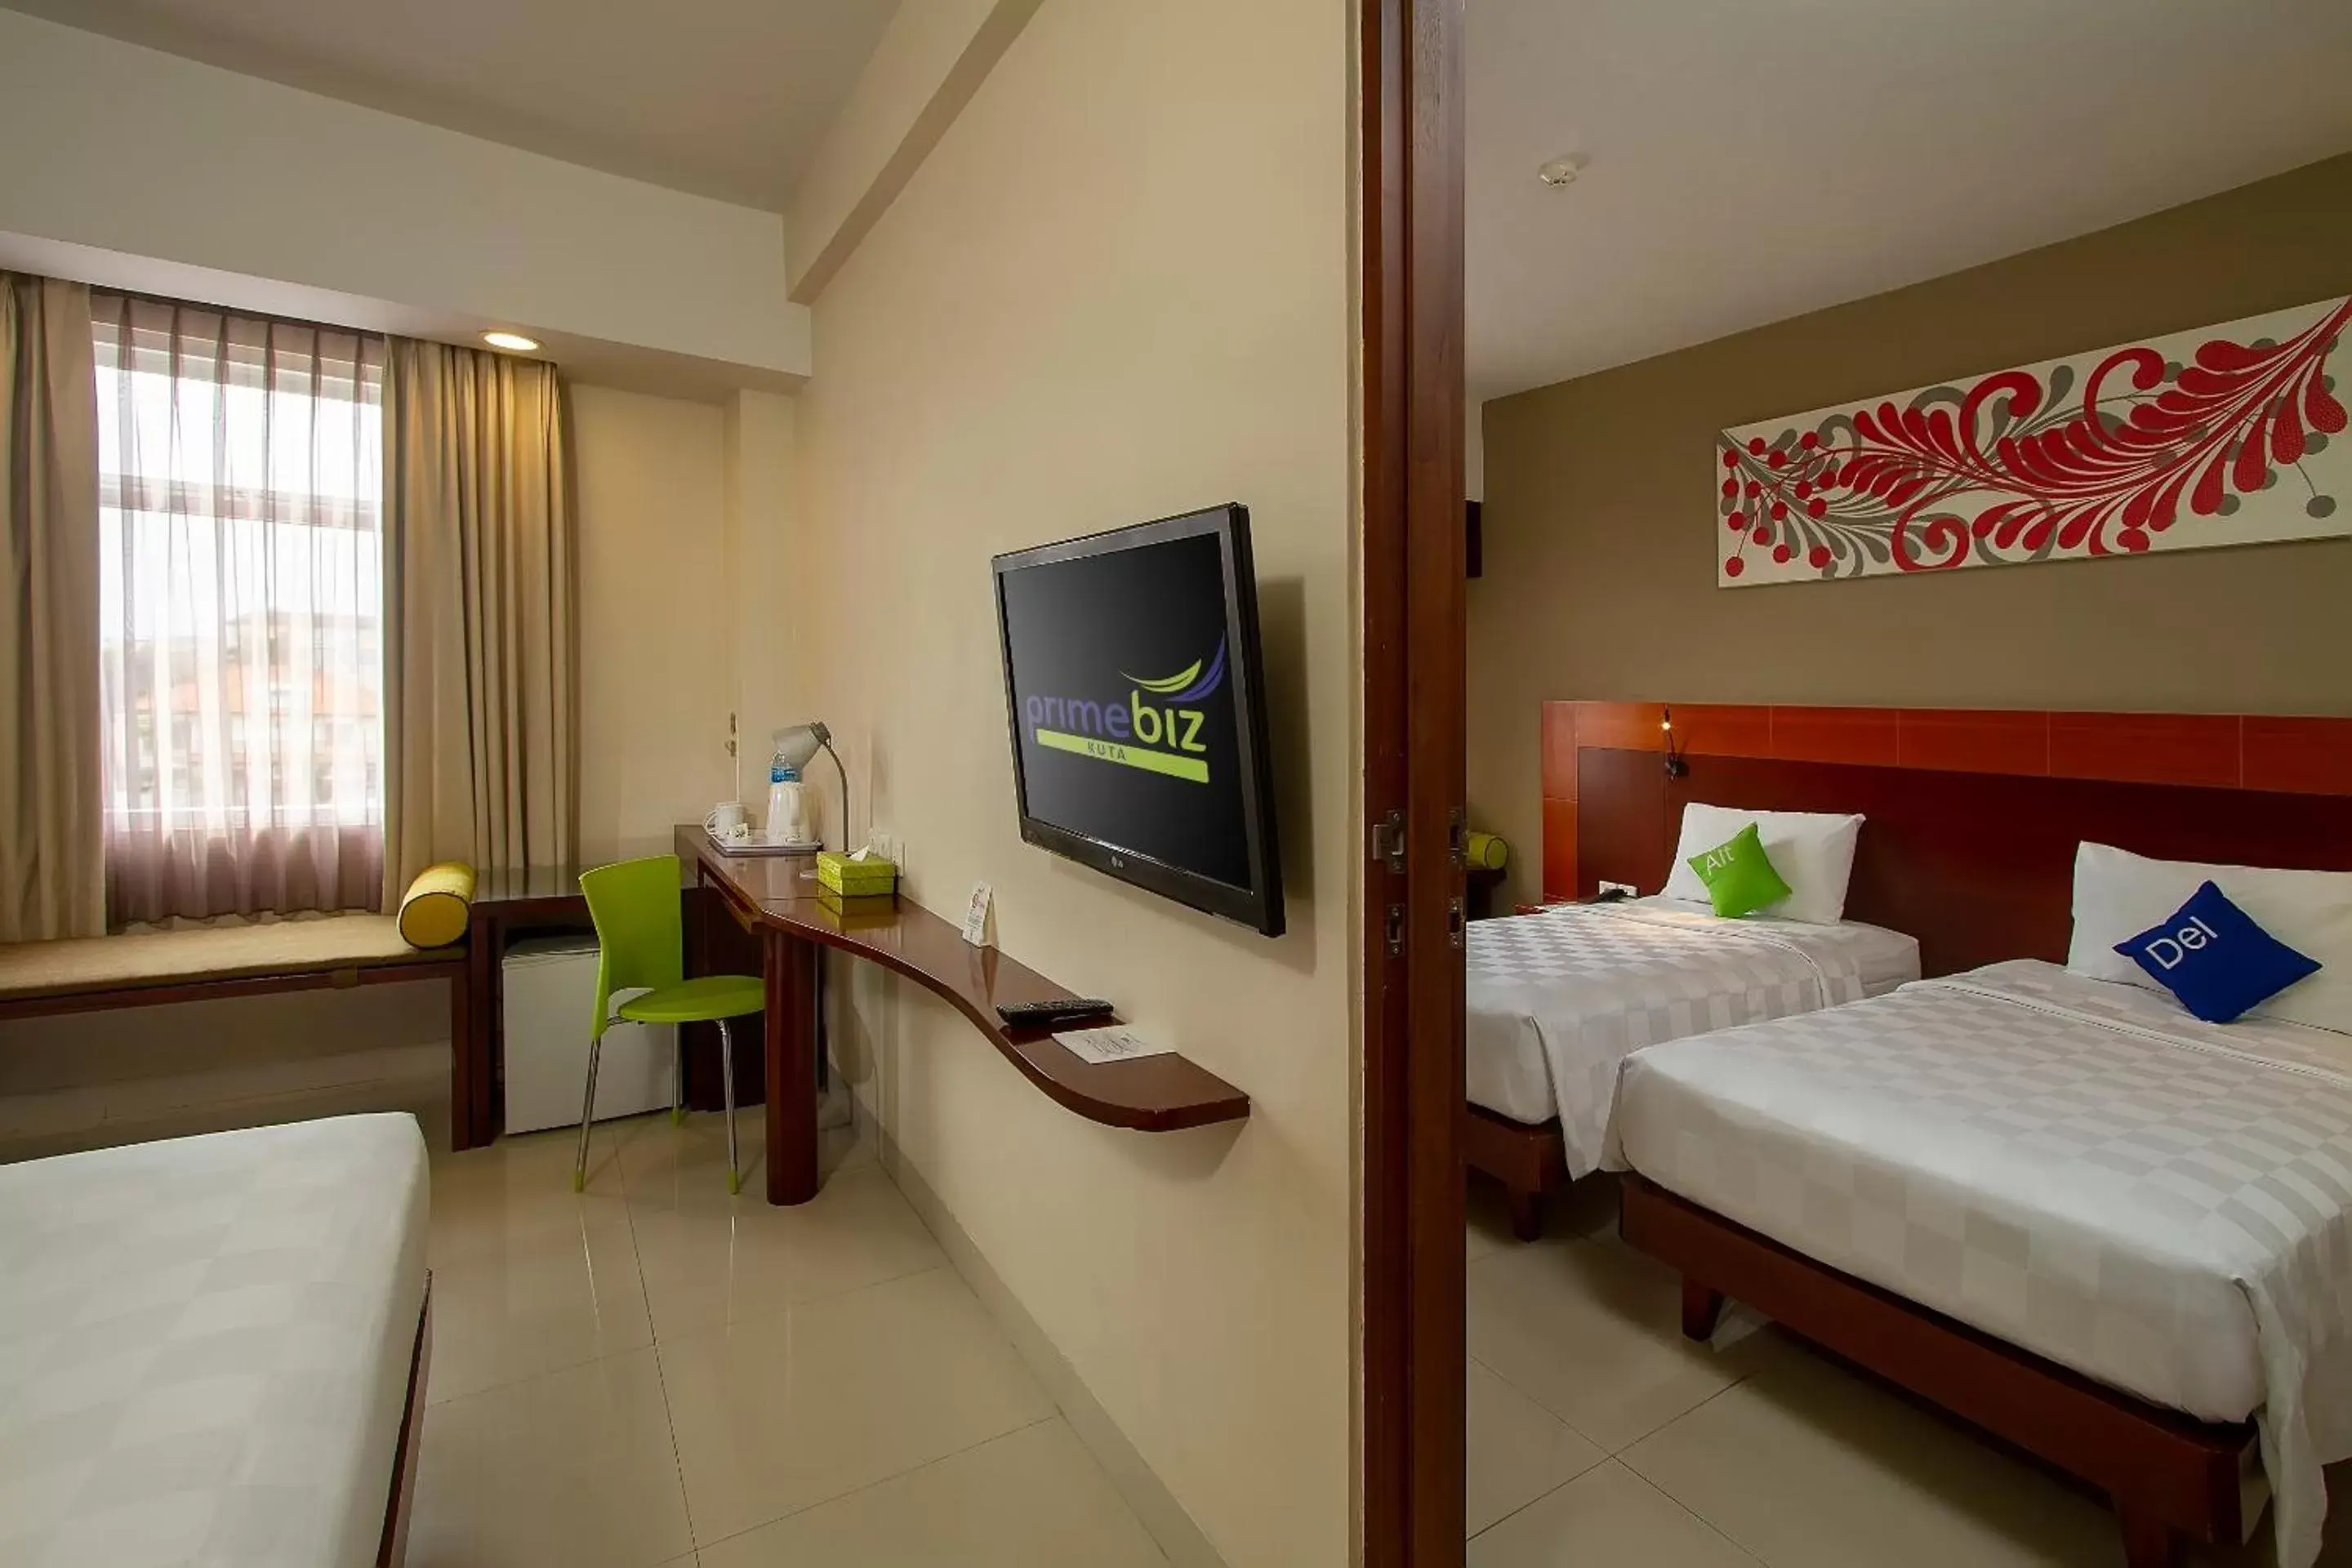 Bedroom in PrimeBiz Hotel Kuta